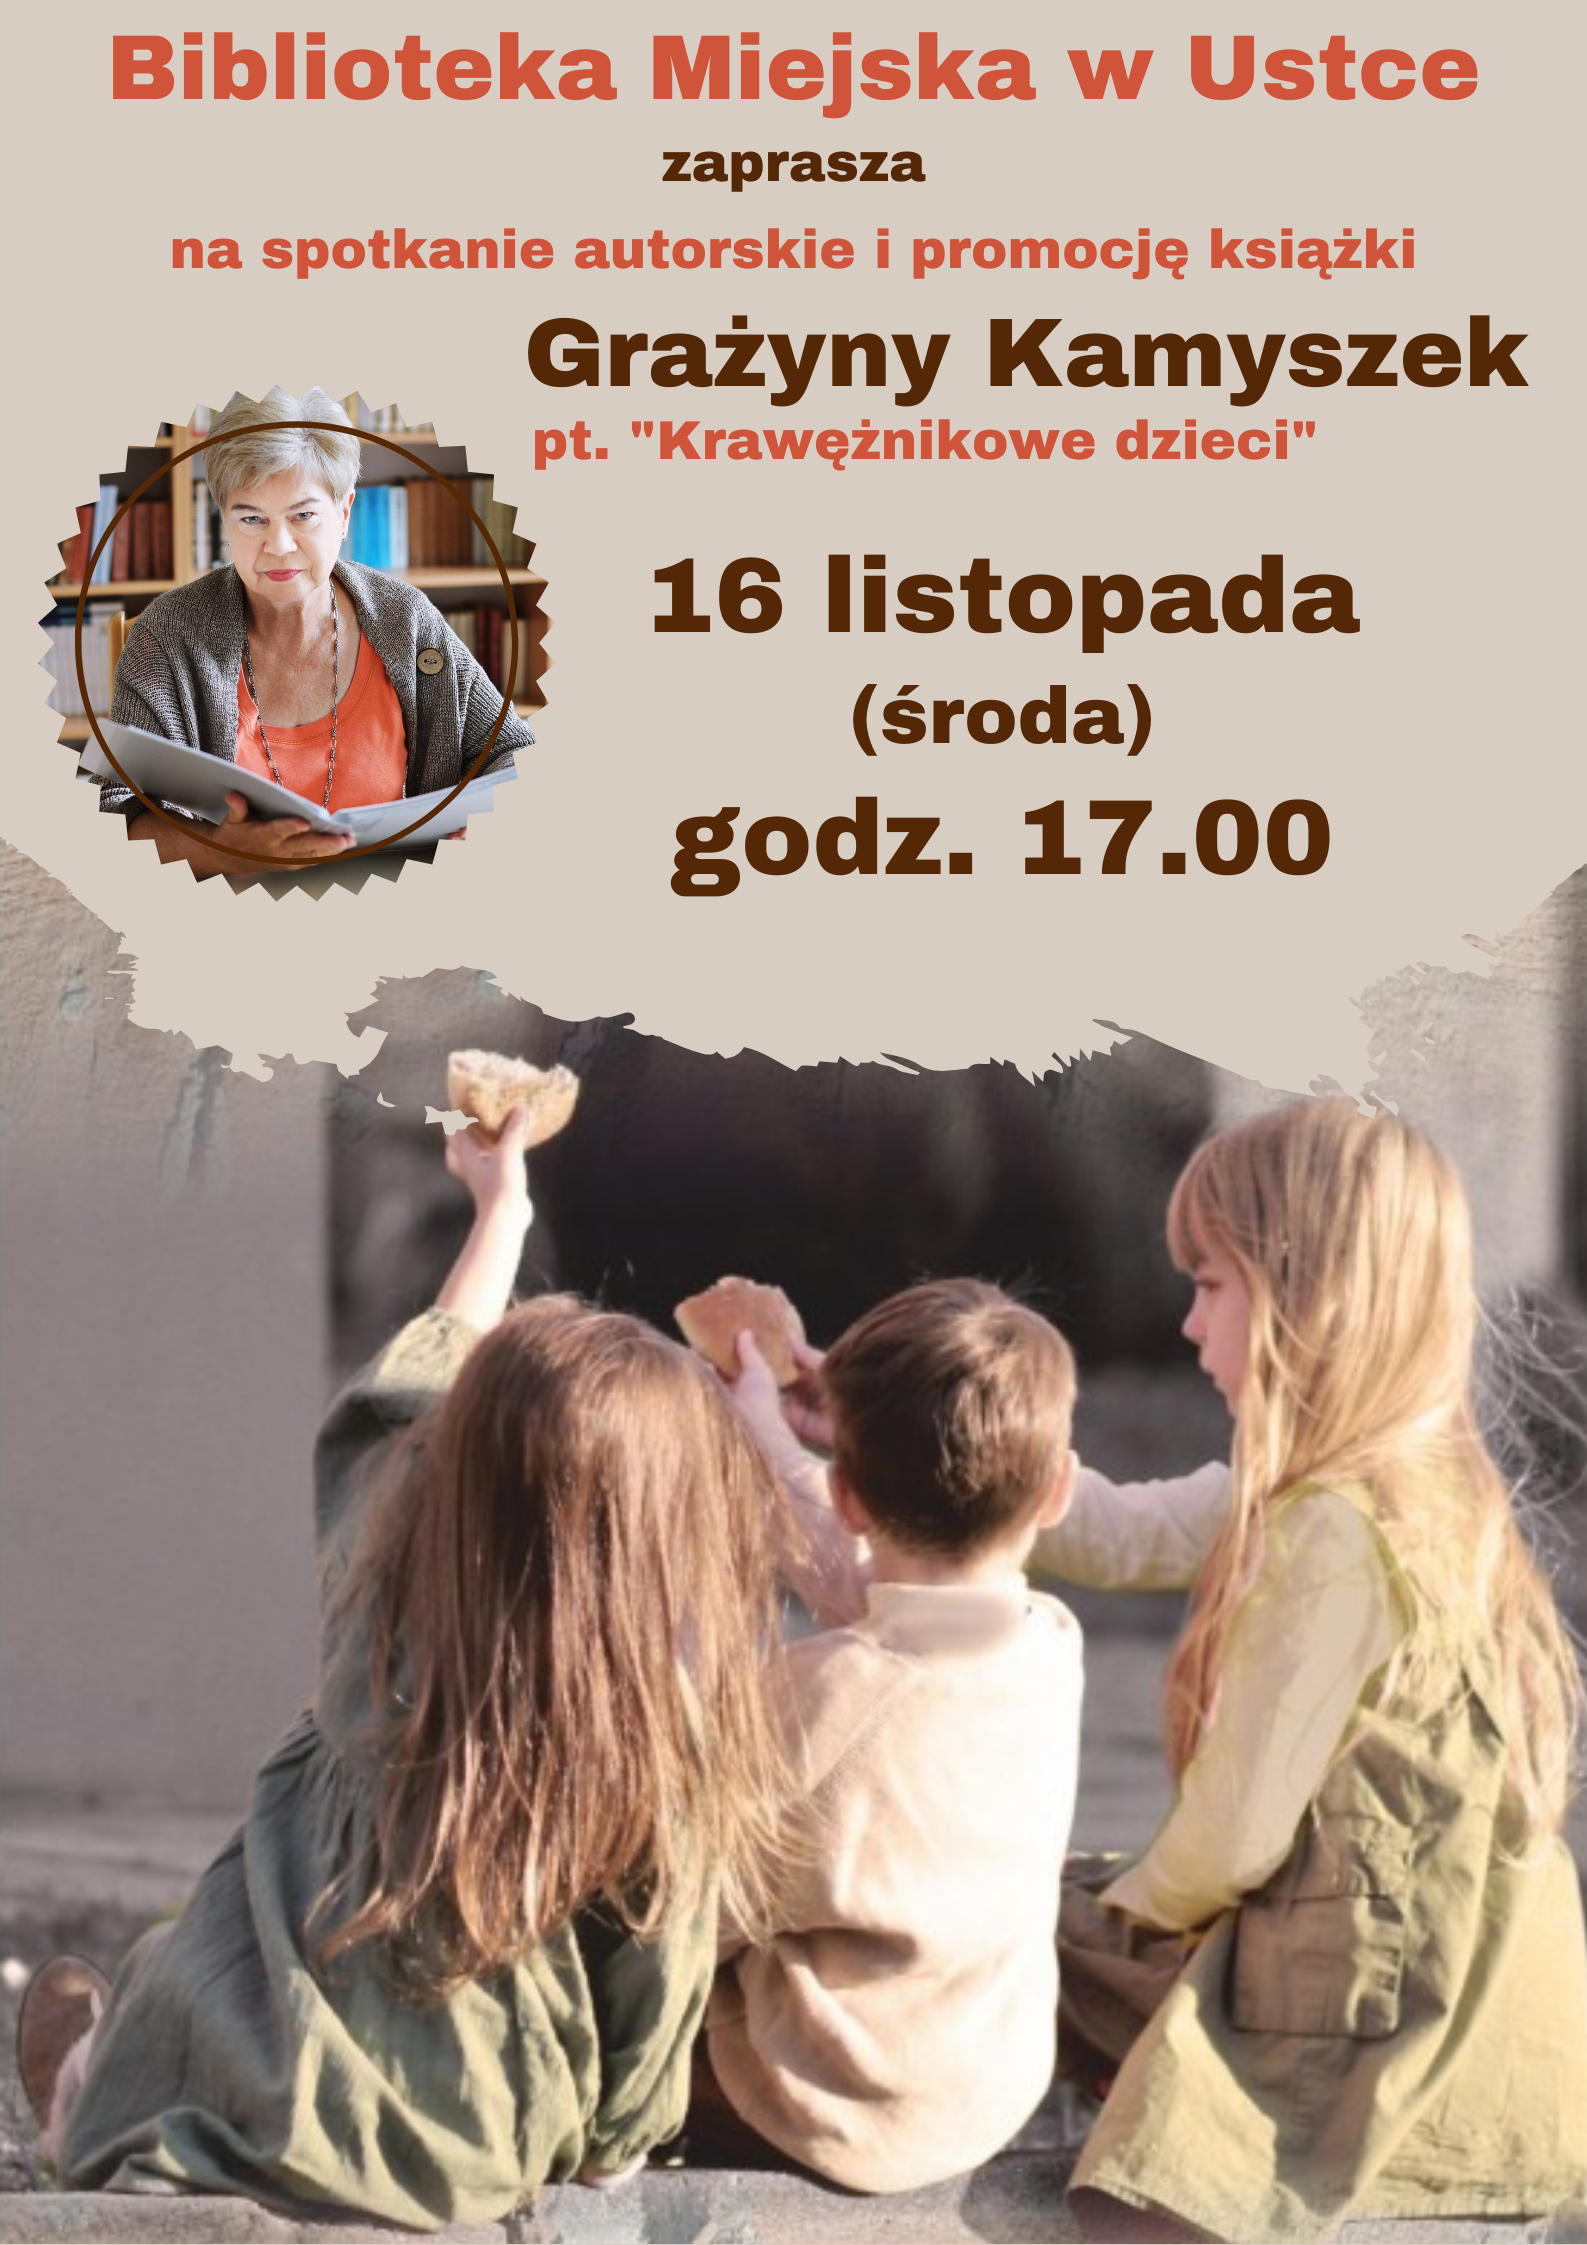 infografika dotycząca spotkania autorskiego i promocji ksiazki Grazyny Kamyszek